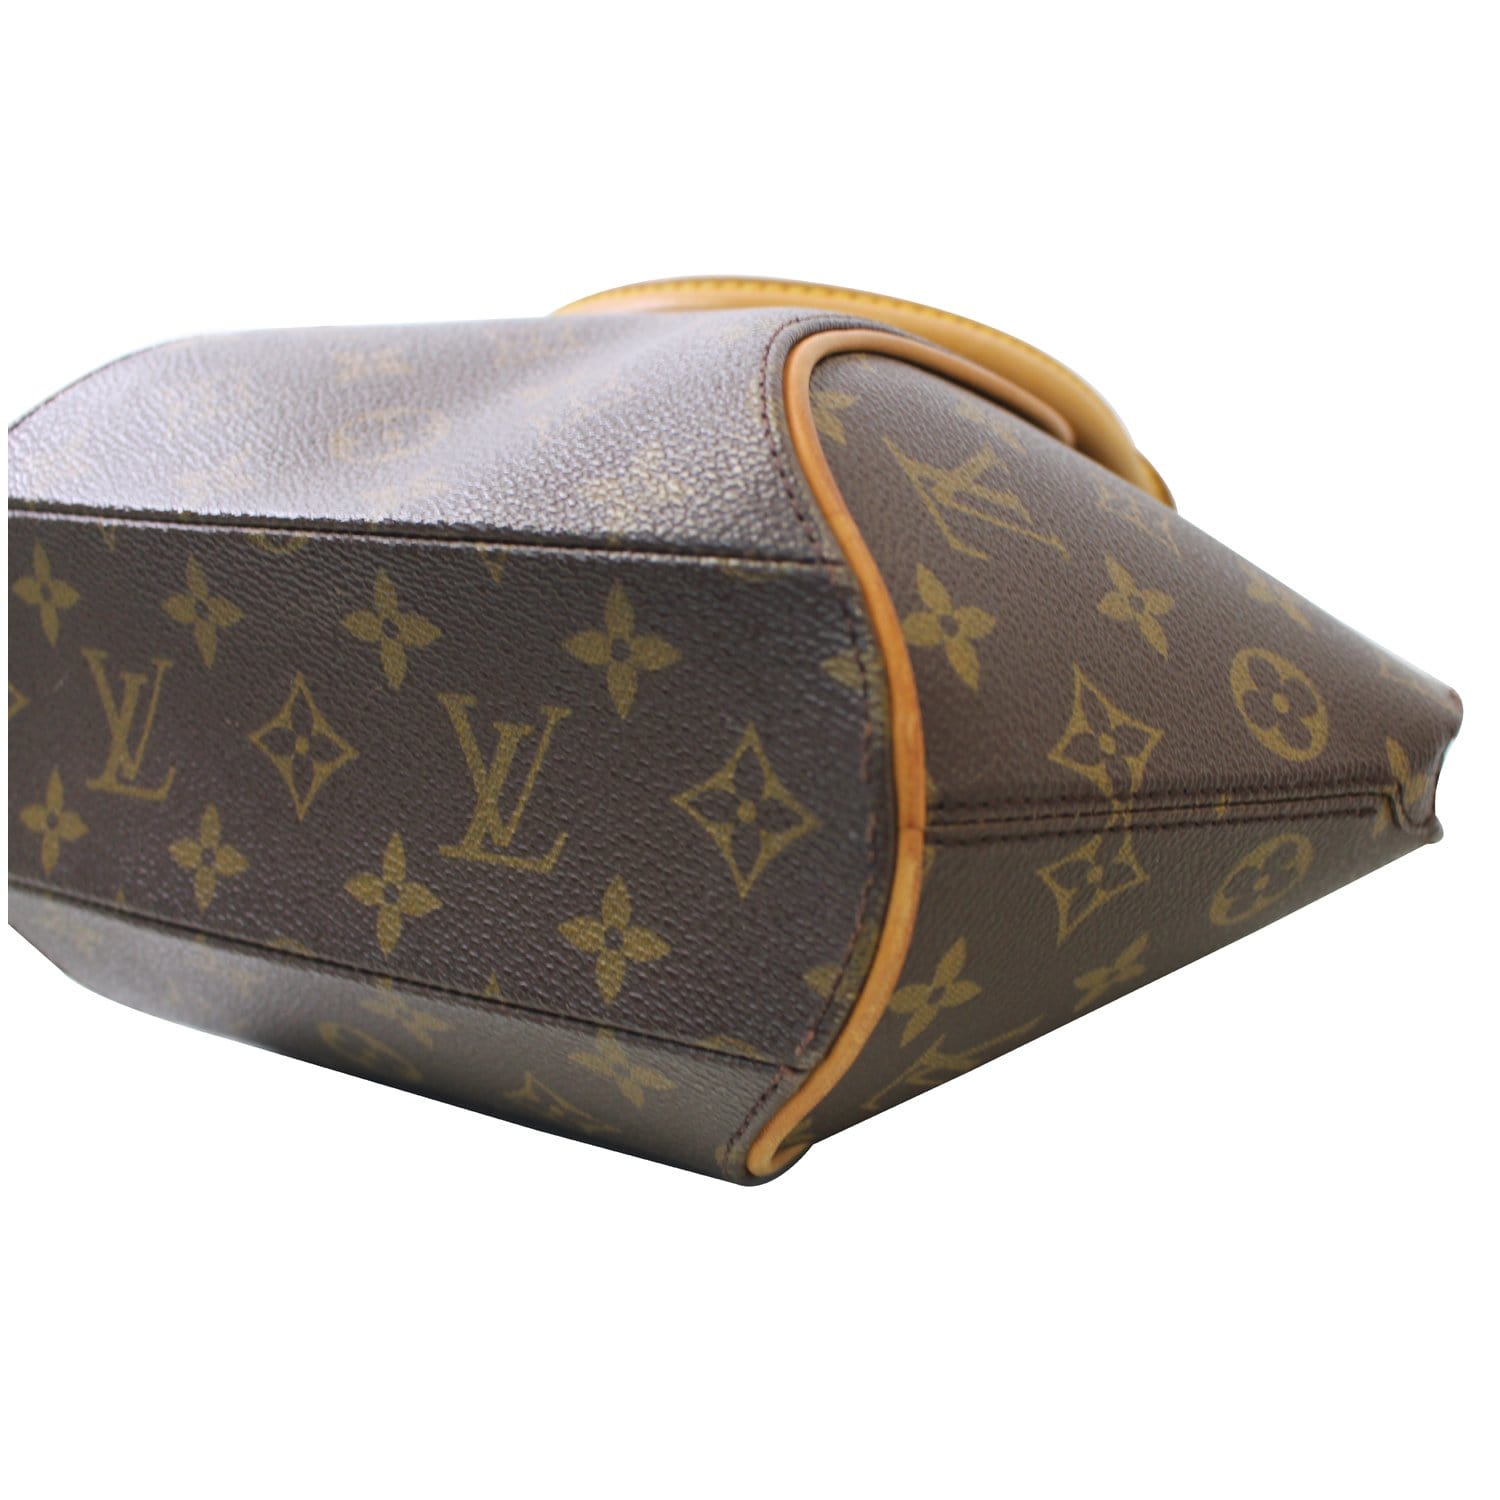 Louis Vuitton, Bags, Louis Vuitton Ellipse Bag